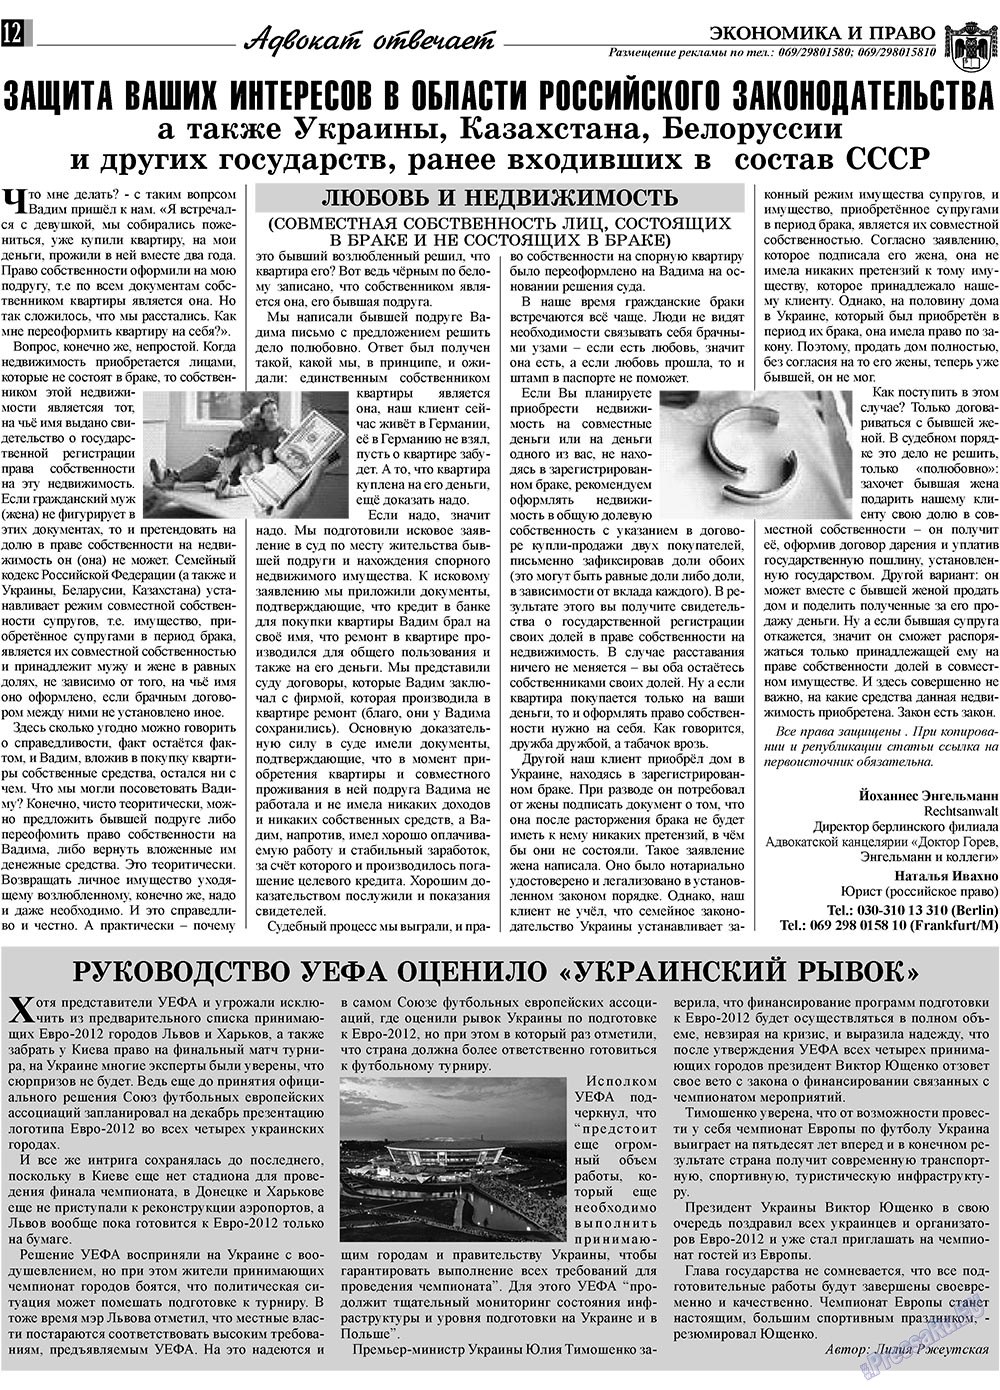 Экономика и право, газета. 2010 №1 стр.12